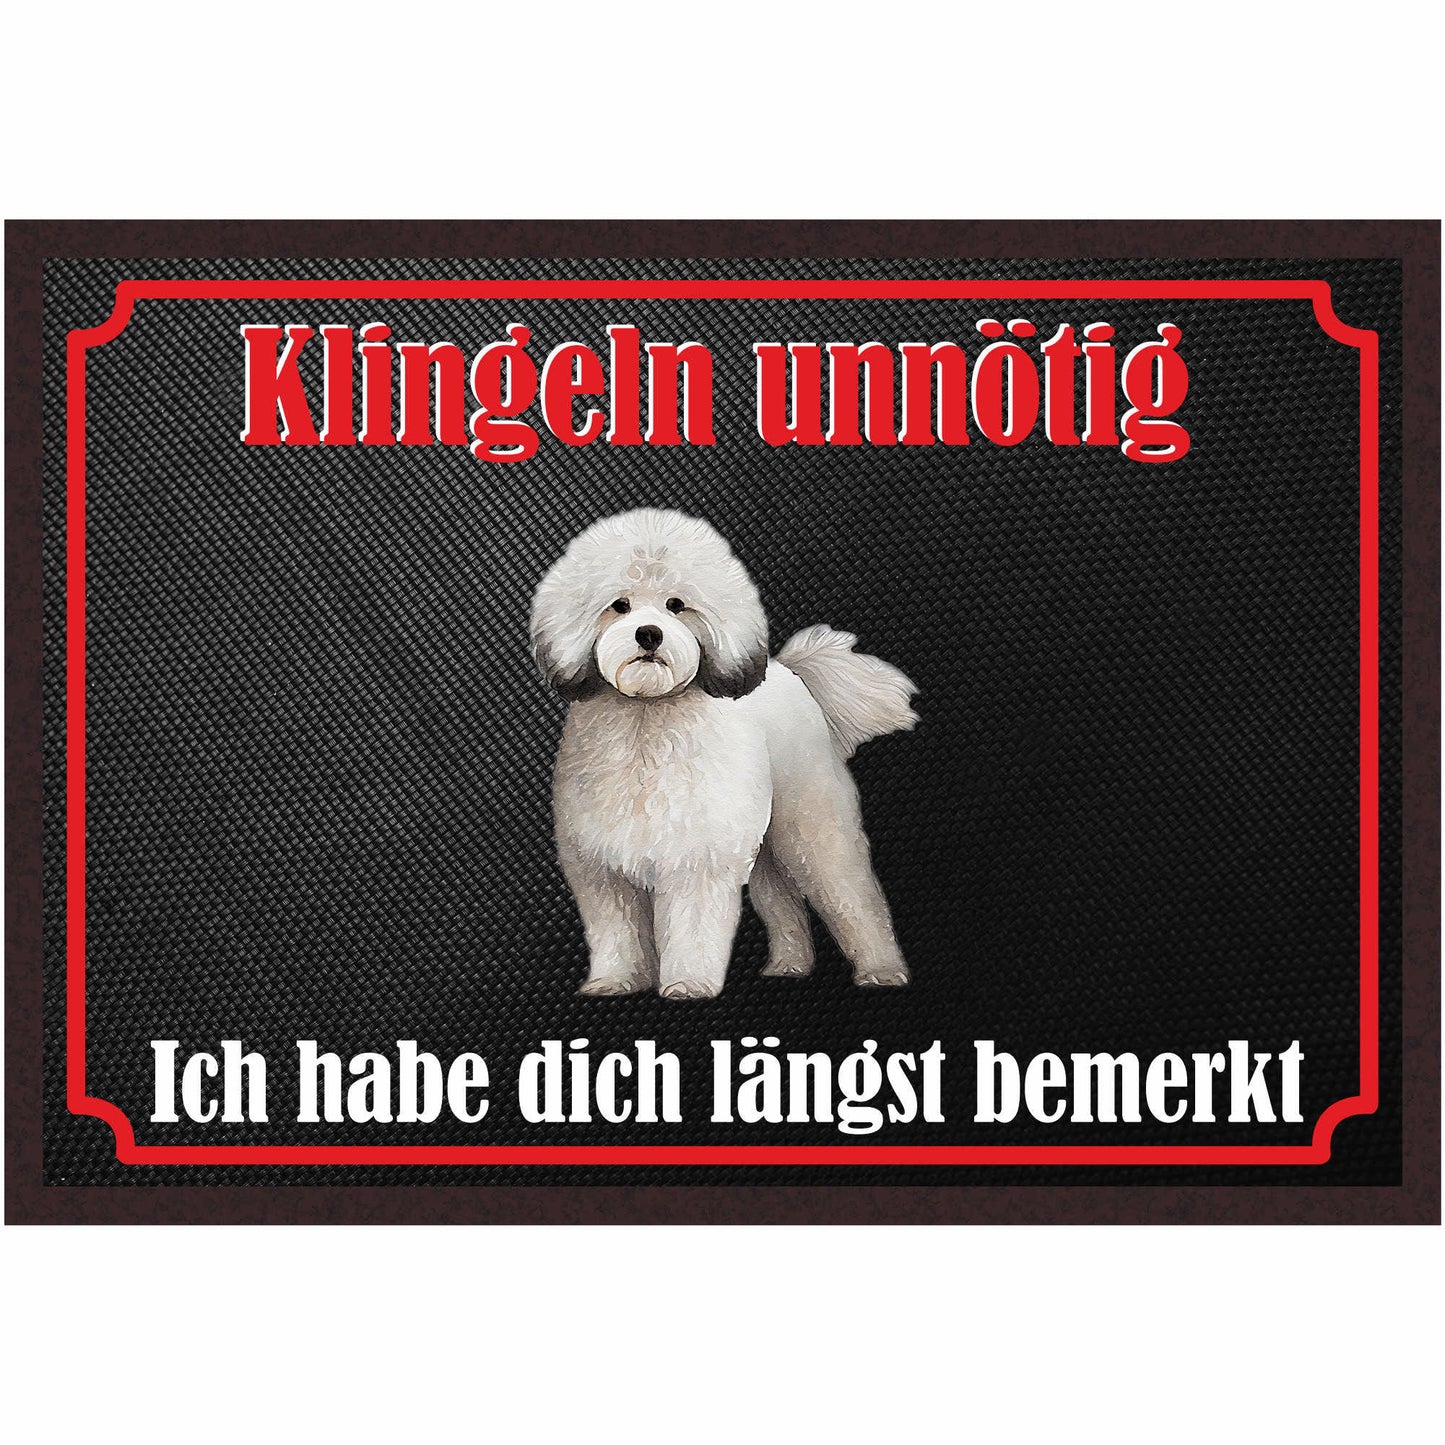 Fussmatte Hund - Bichon Frisé - 50x35 cm mit lustigem Spruch